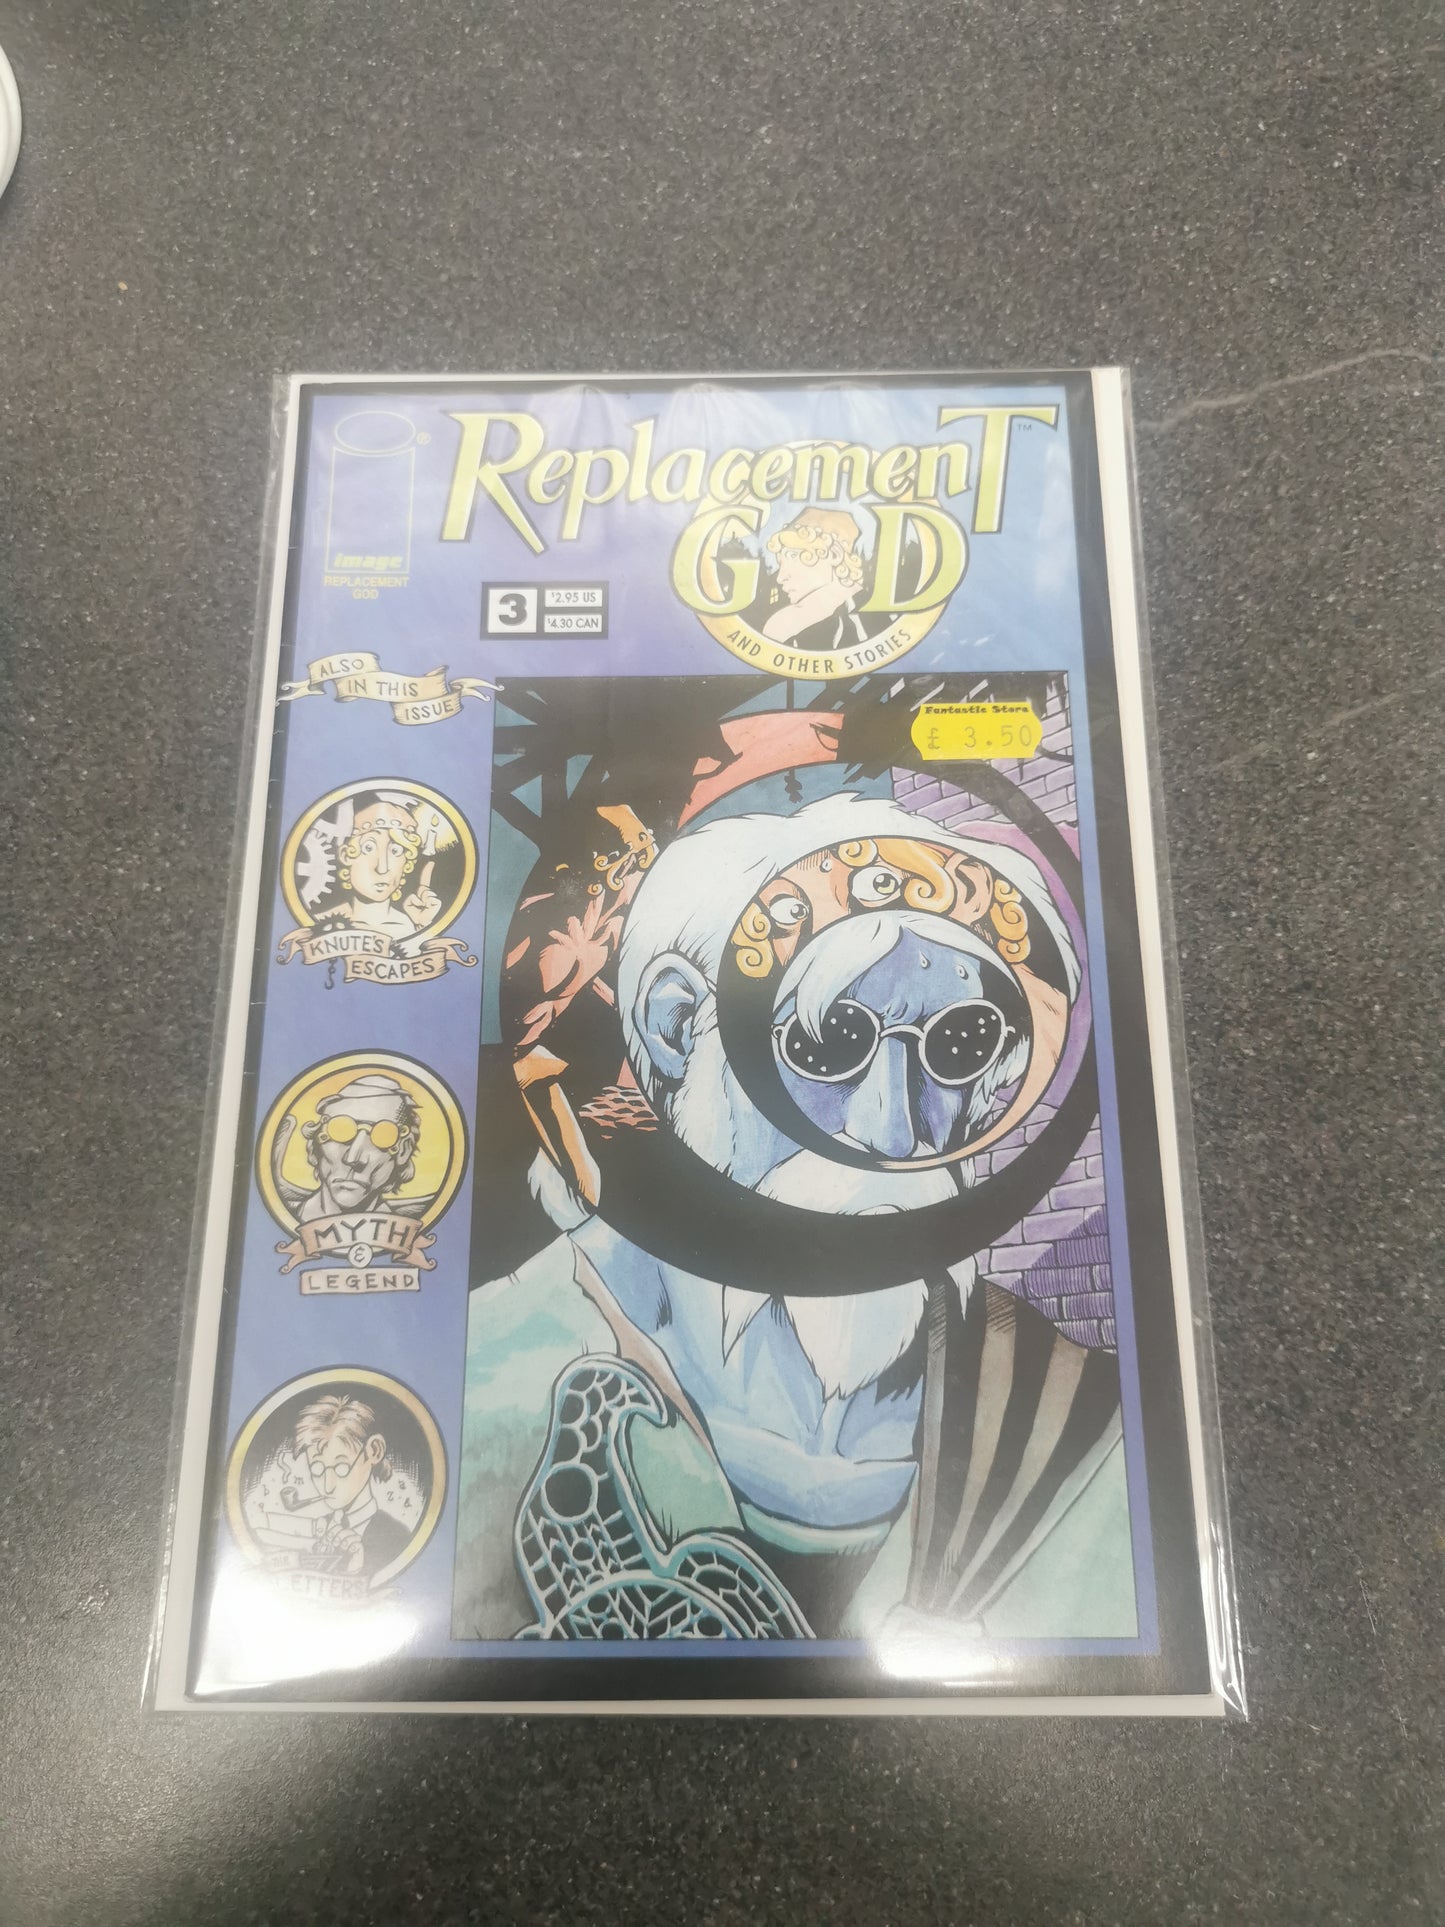 Replacement God #3 Image comics 1997